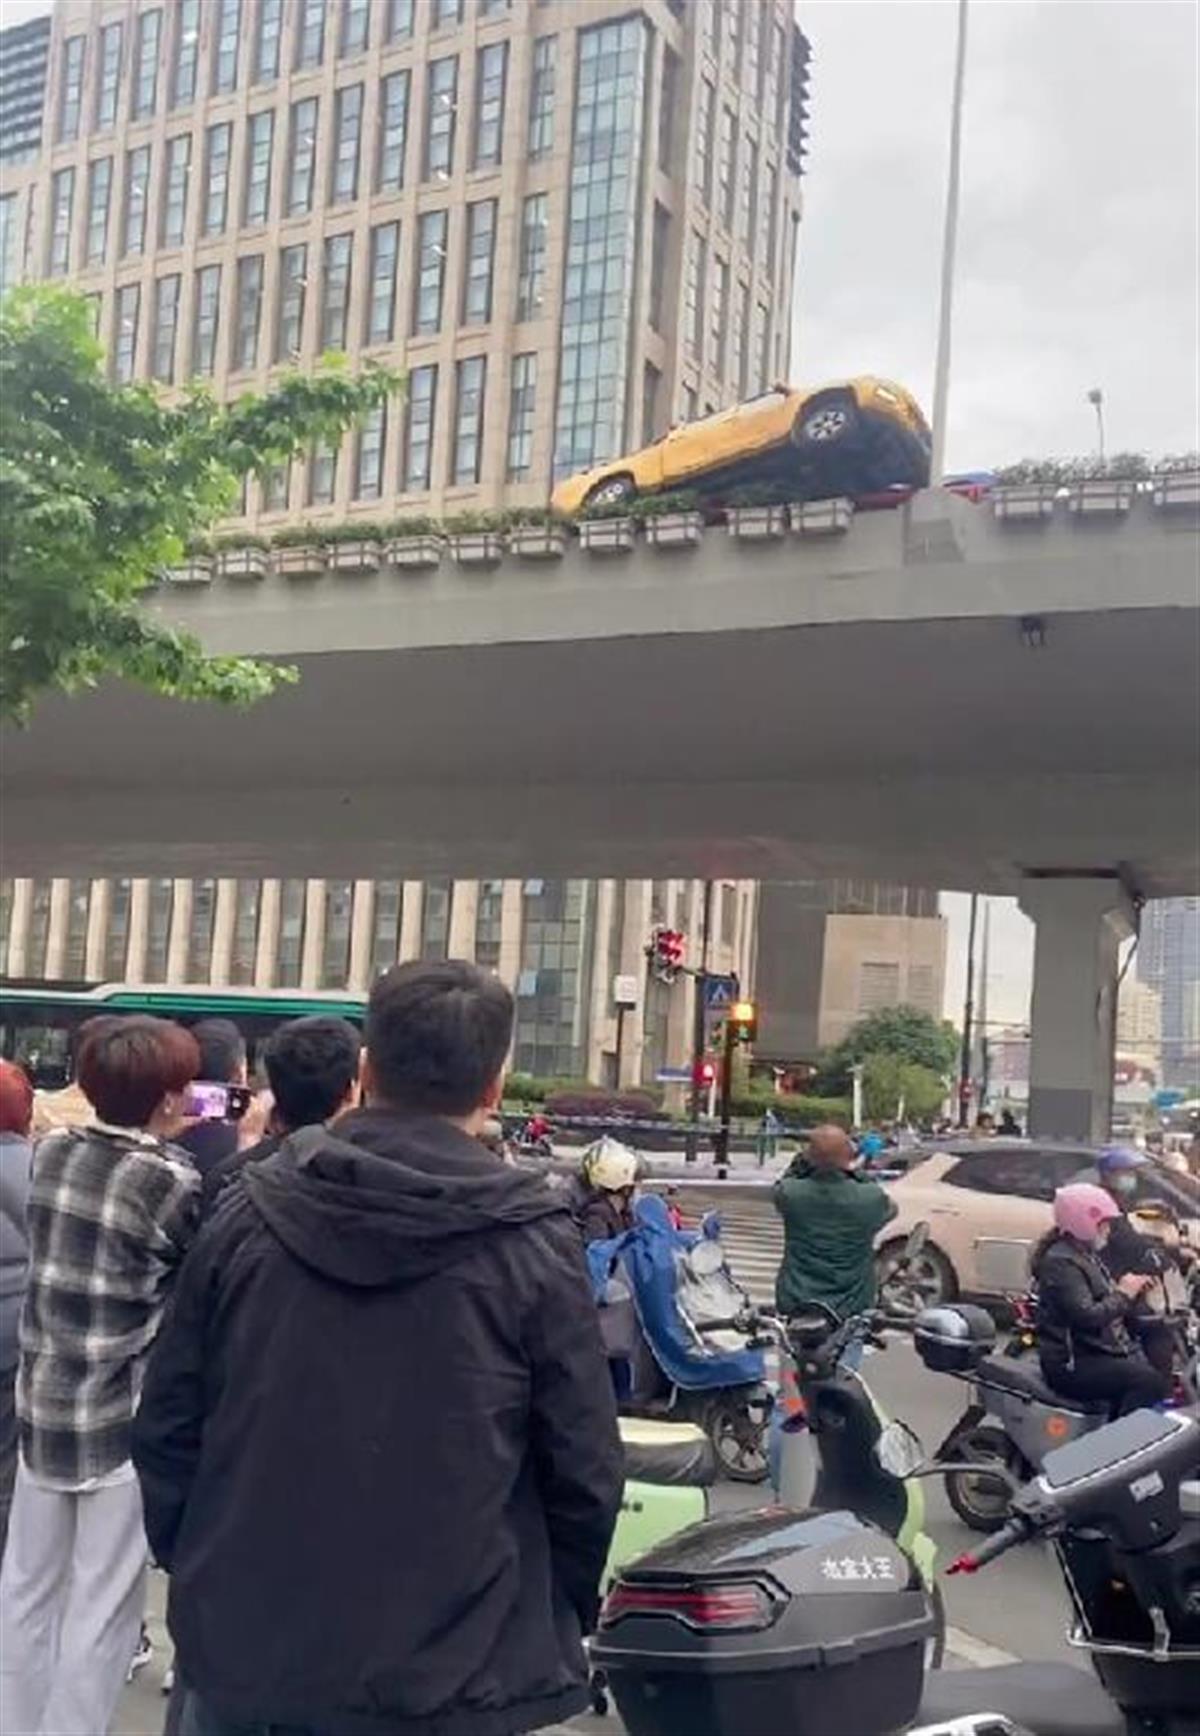 上海高架斗气车主或涉什么罪名?